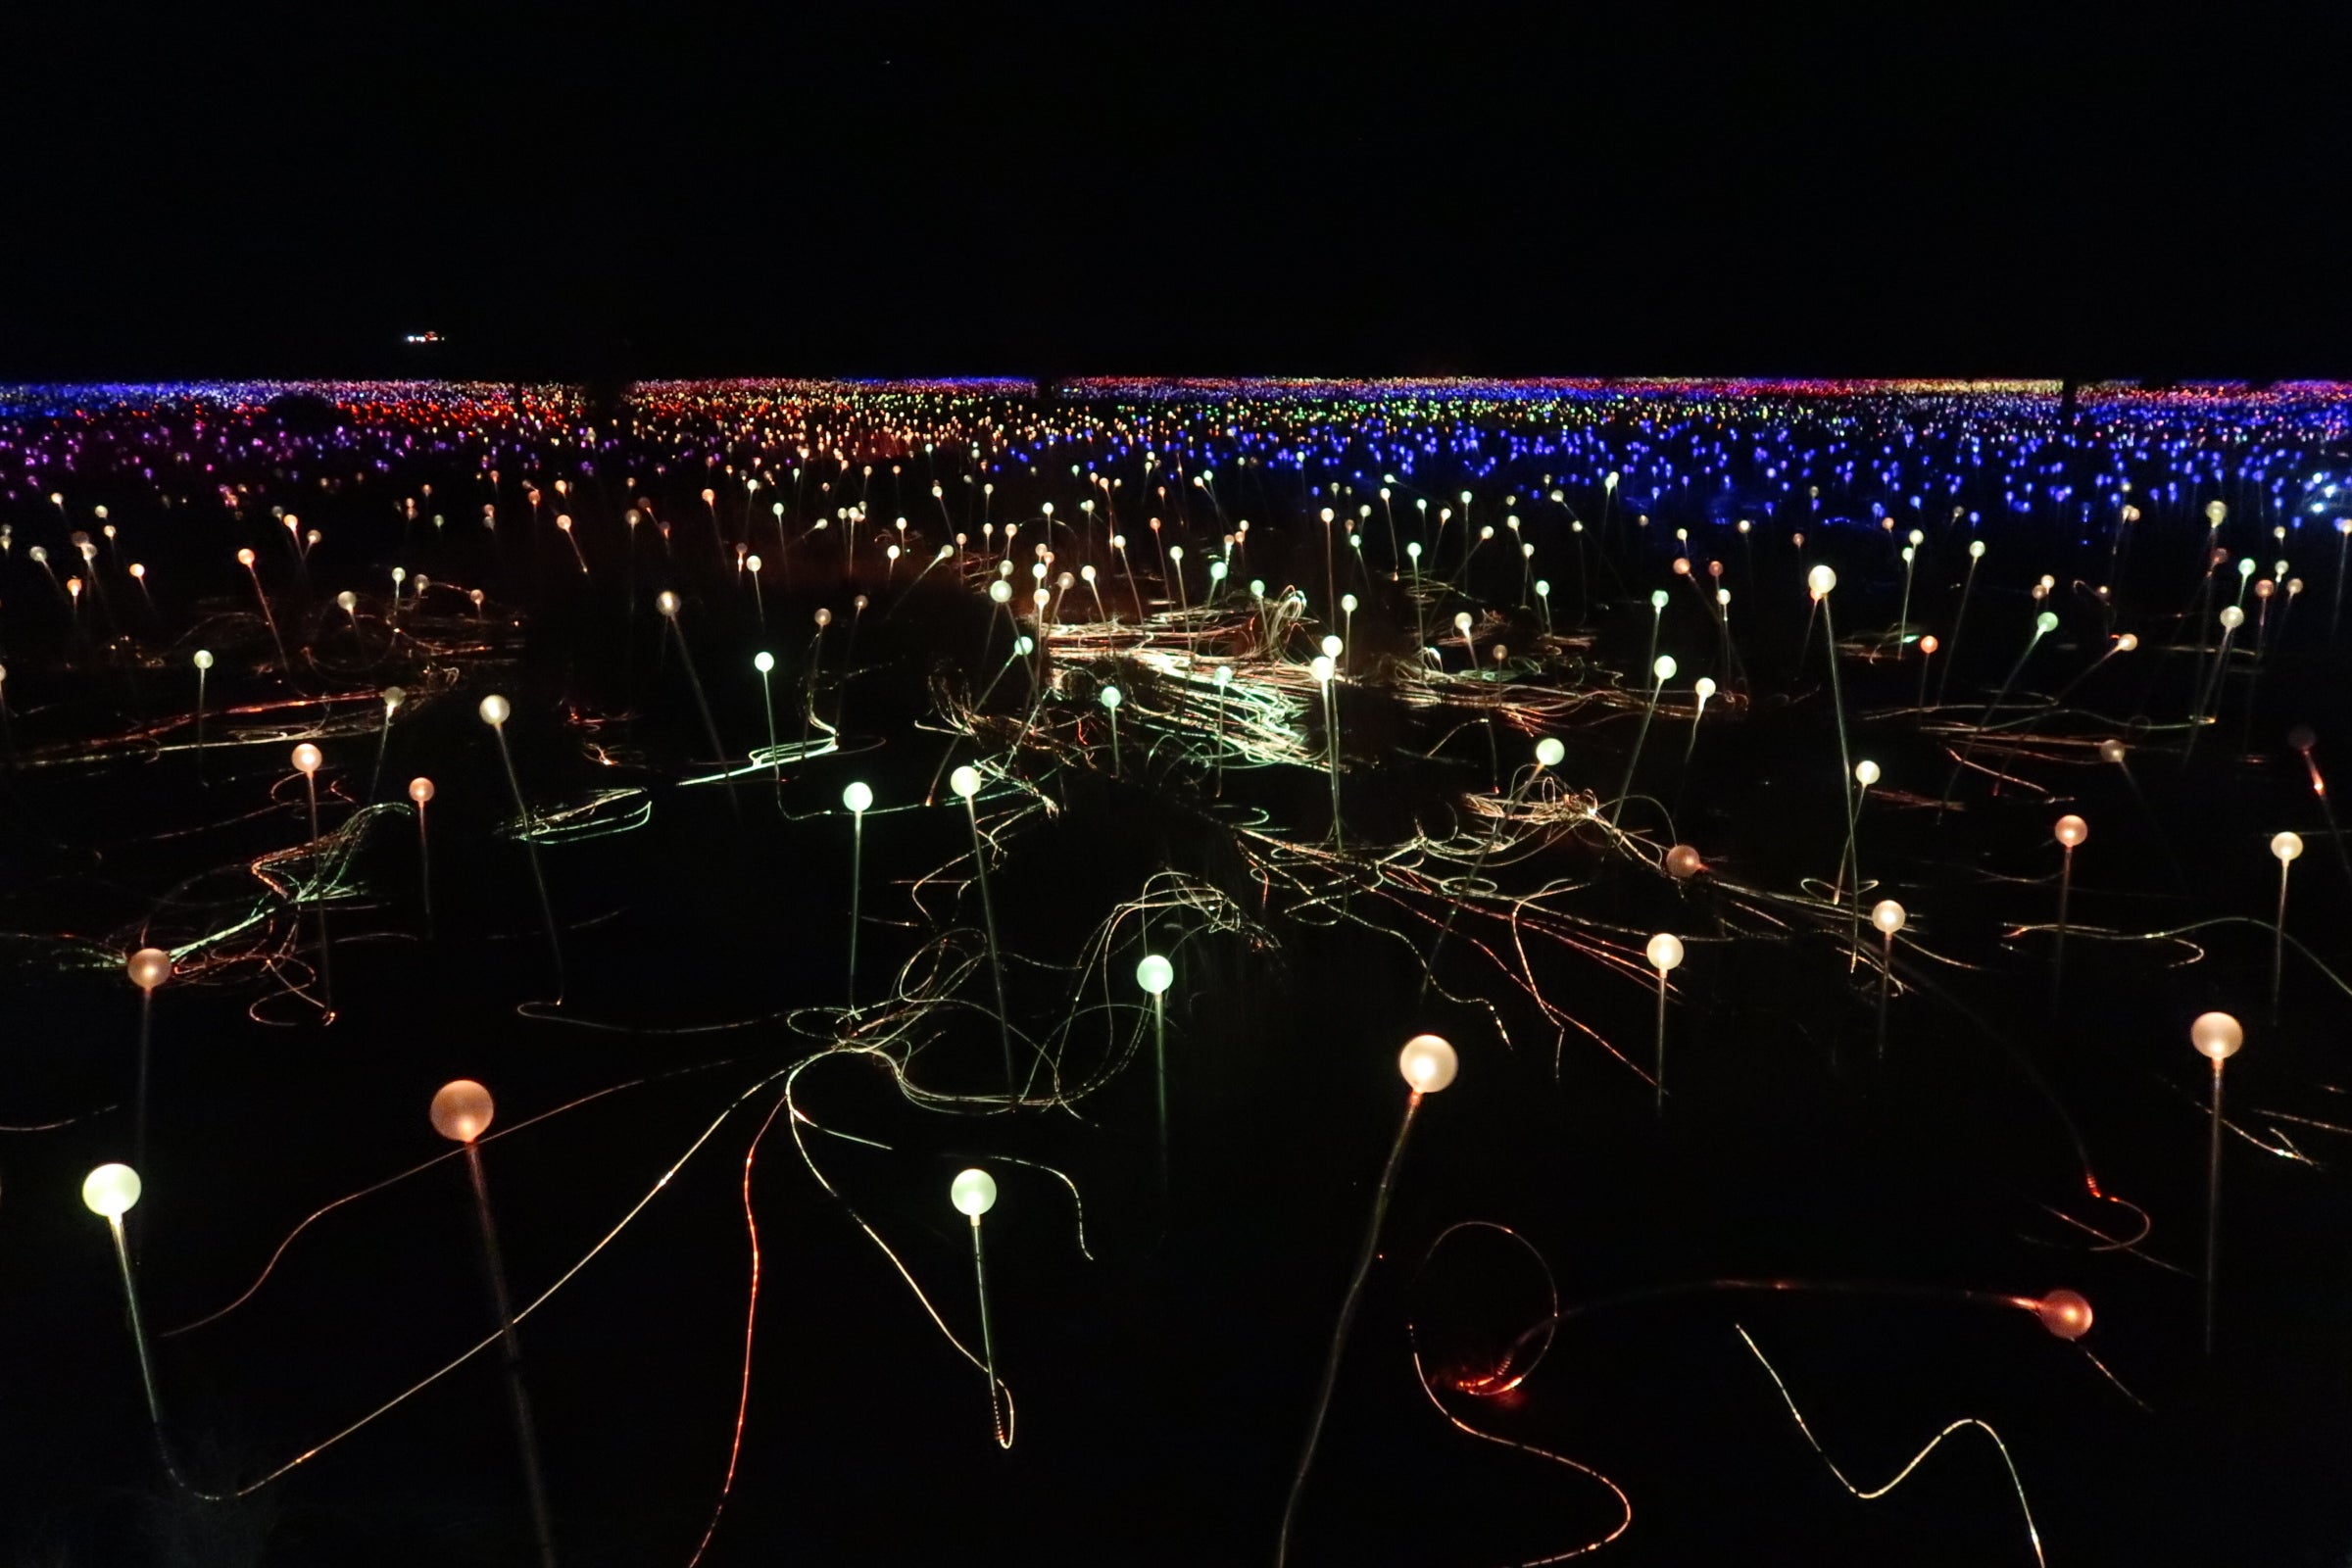 Bruce Munro’s Field of Light installation